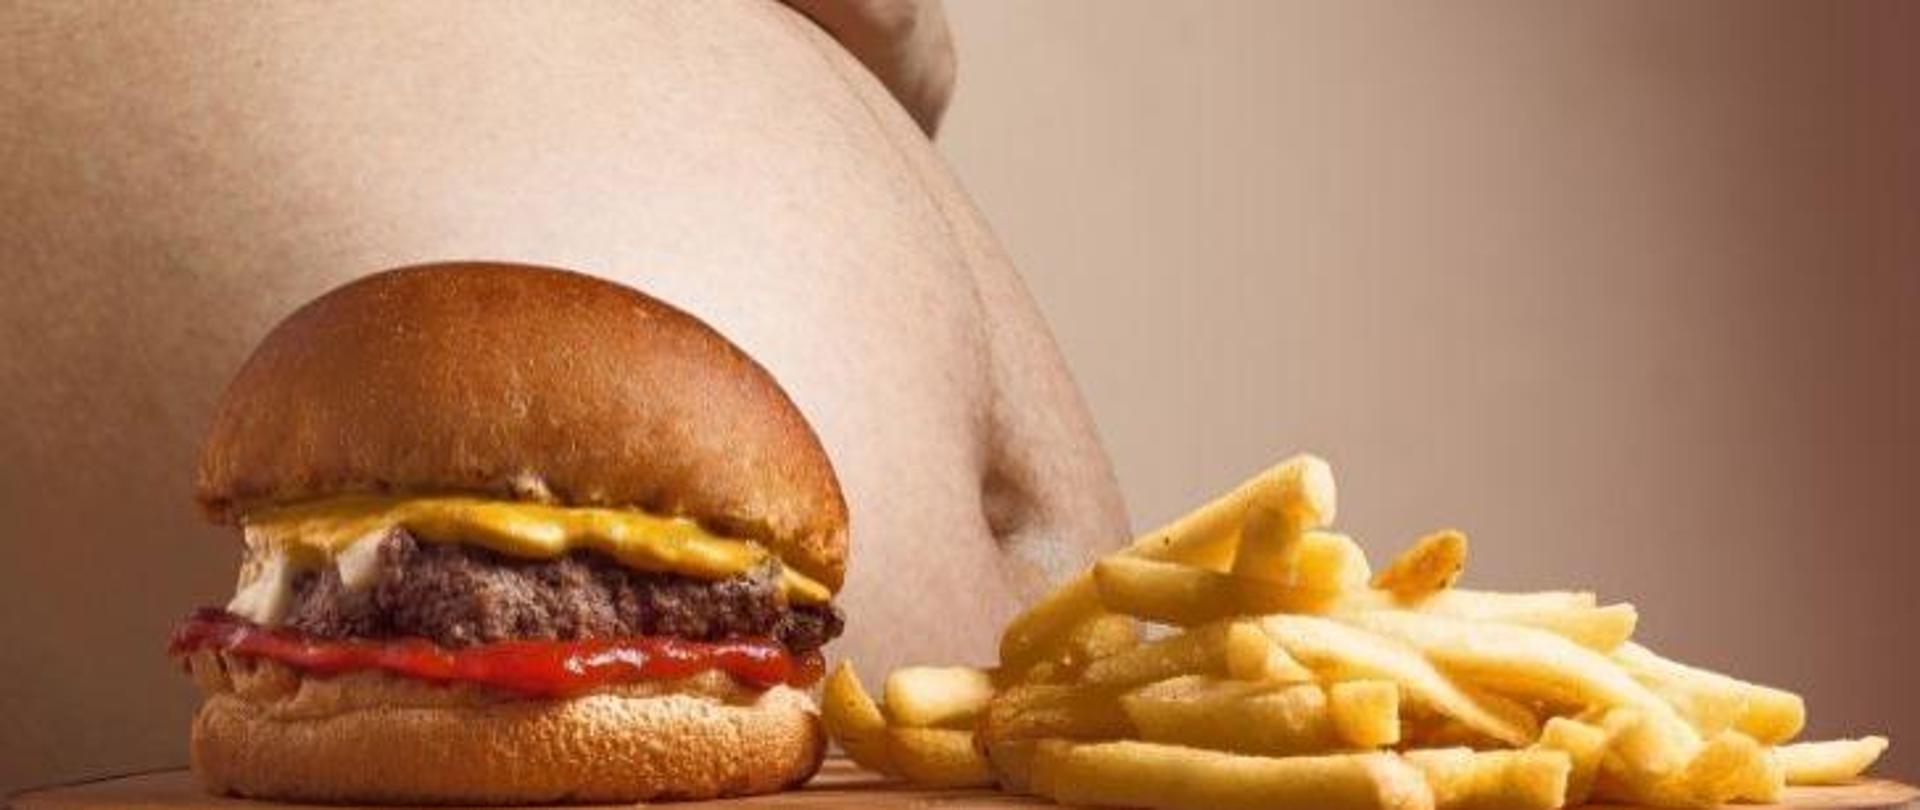 Na pierwszym planie widać tłustego hamburgera wraz z frytkami. Na drugim planie widać brzuch osoby otyłej.